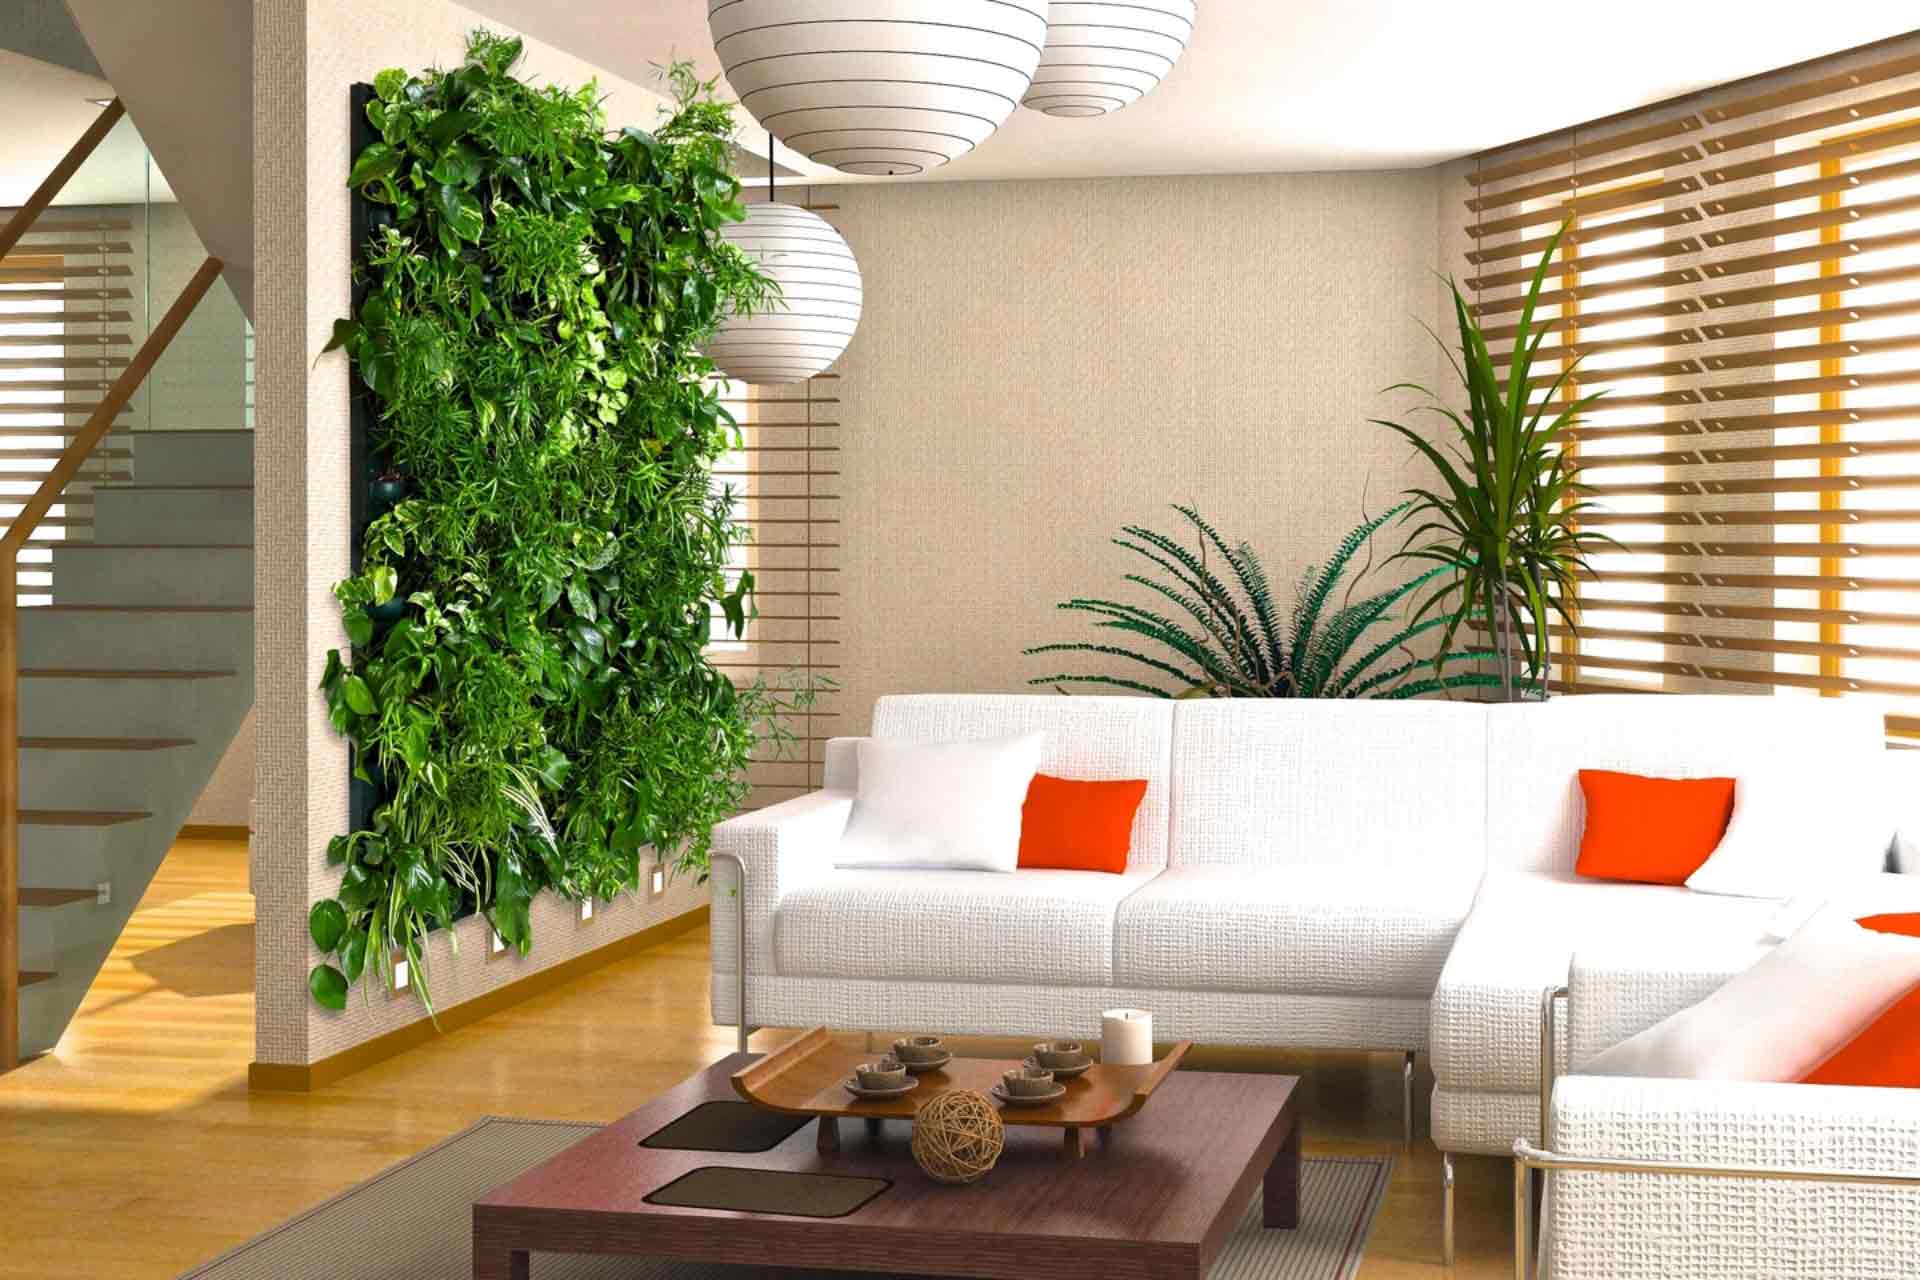 Комнатные растения и цветы в интерьере жилого дома: проект для гостиной .